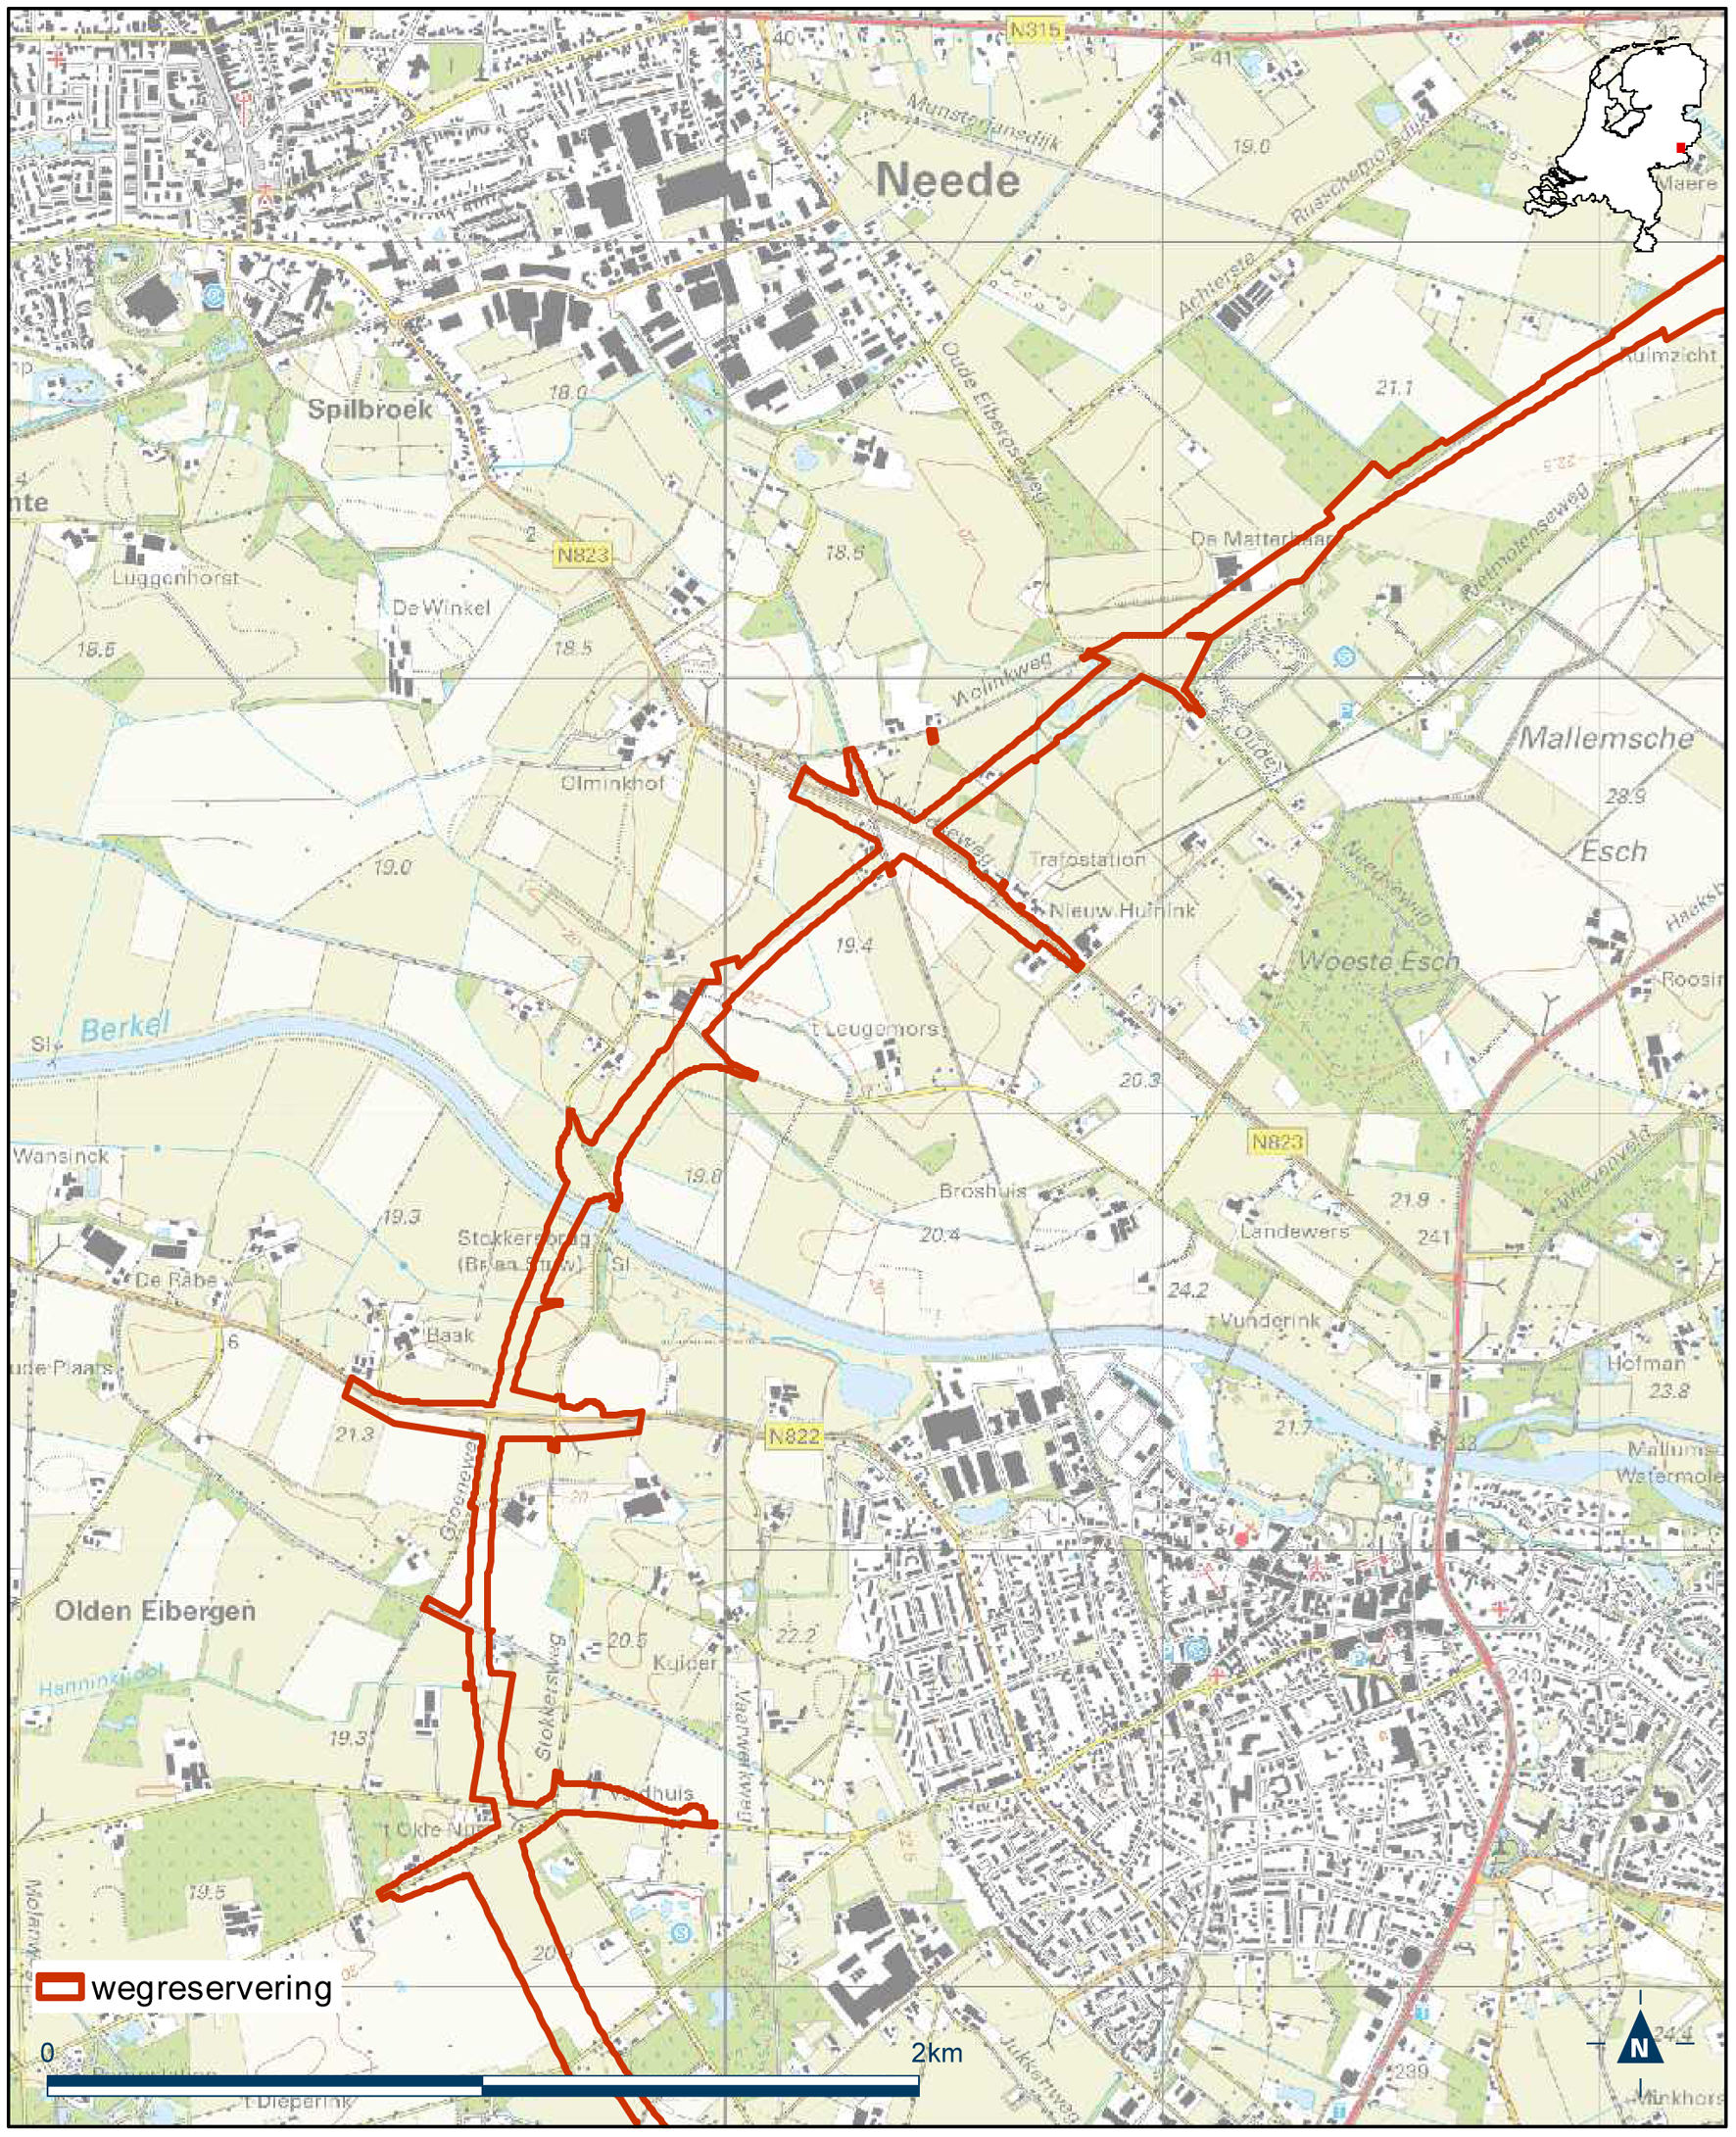 Detailkaart 6 reserveringsgebied nieuwe hoofdweg N18 Varsseveld-Enschede